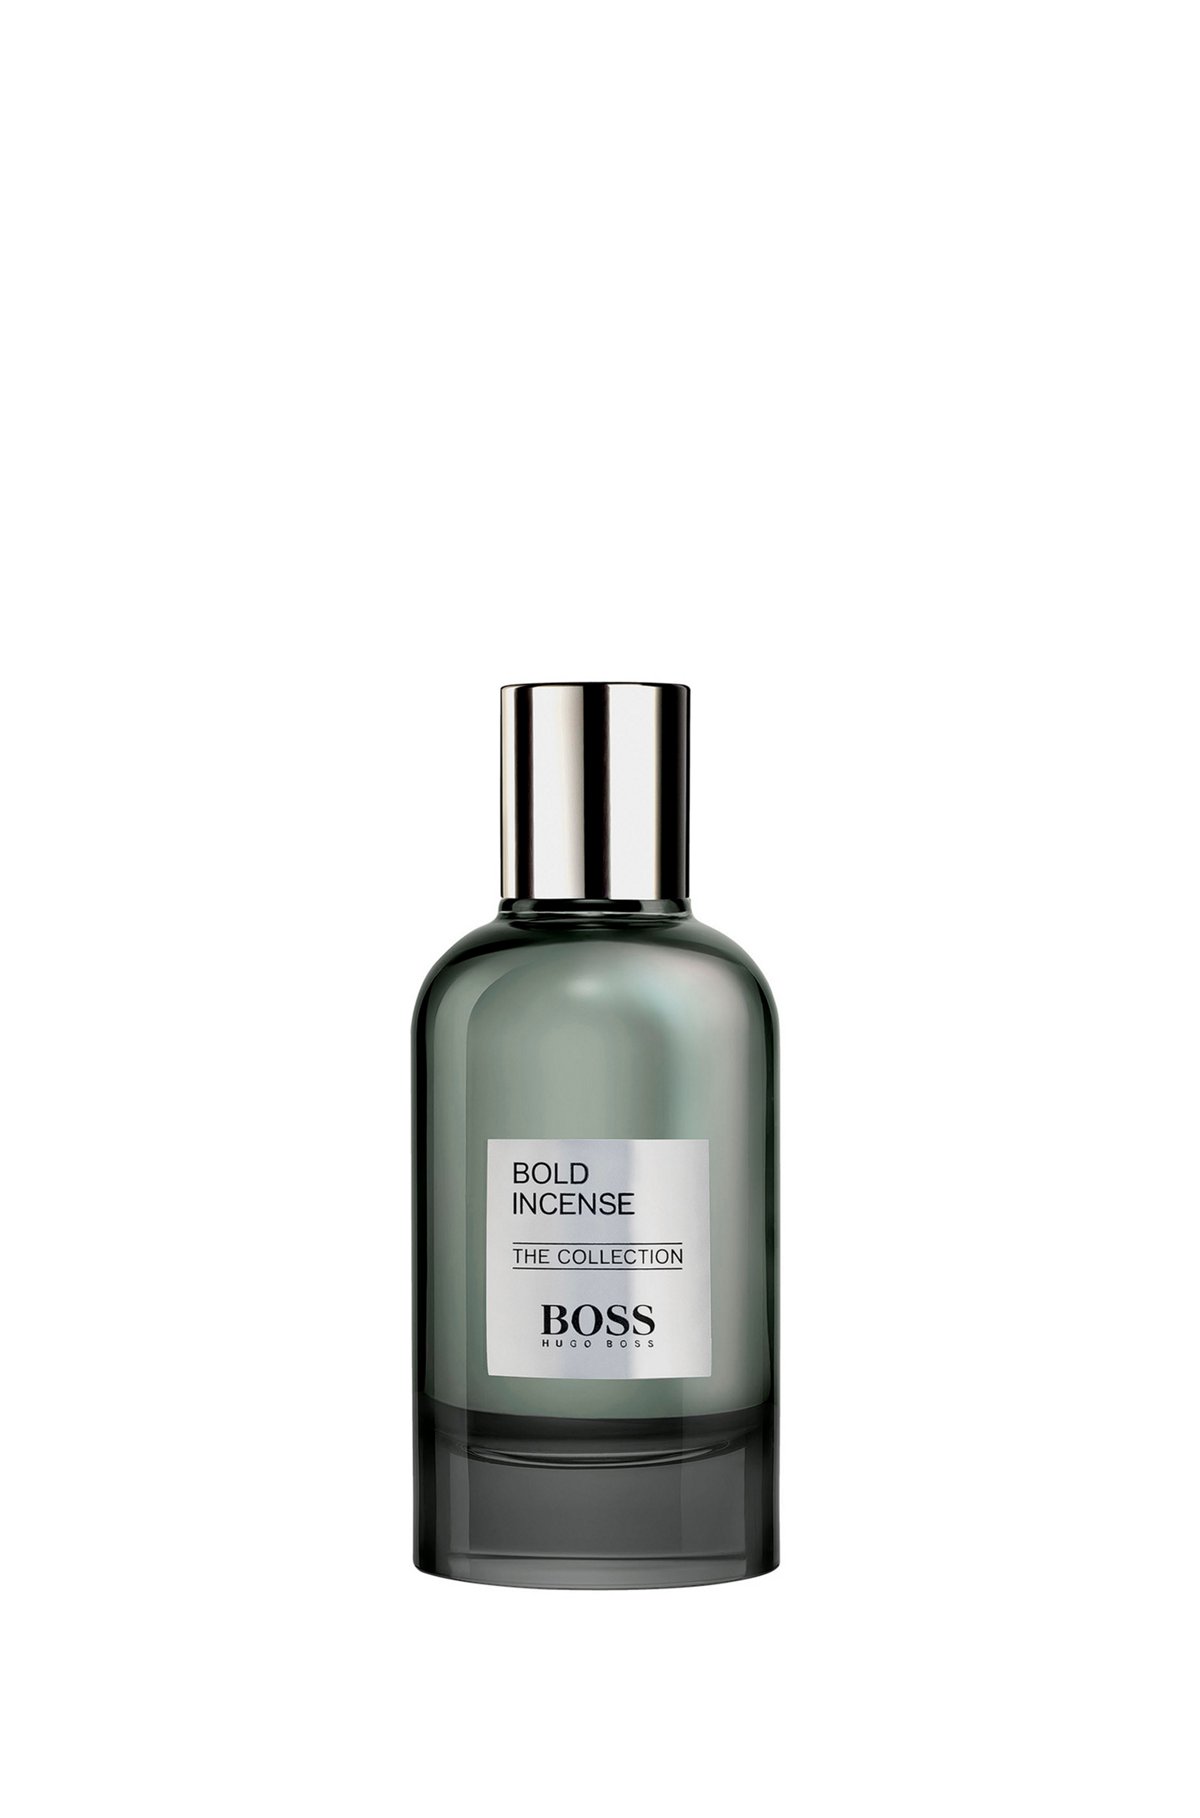 BOSS The Collection Bold Incense Eau de Parfum 100 ml, Assorted-Pre-Pack